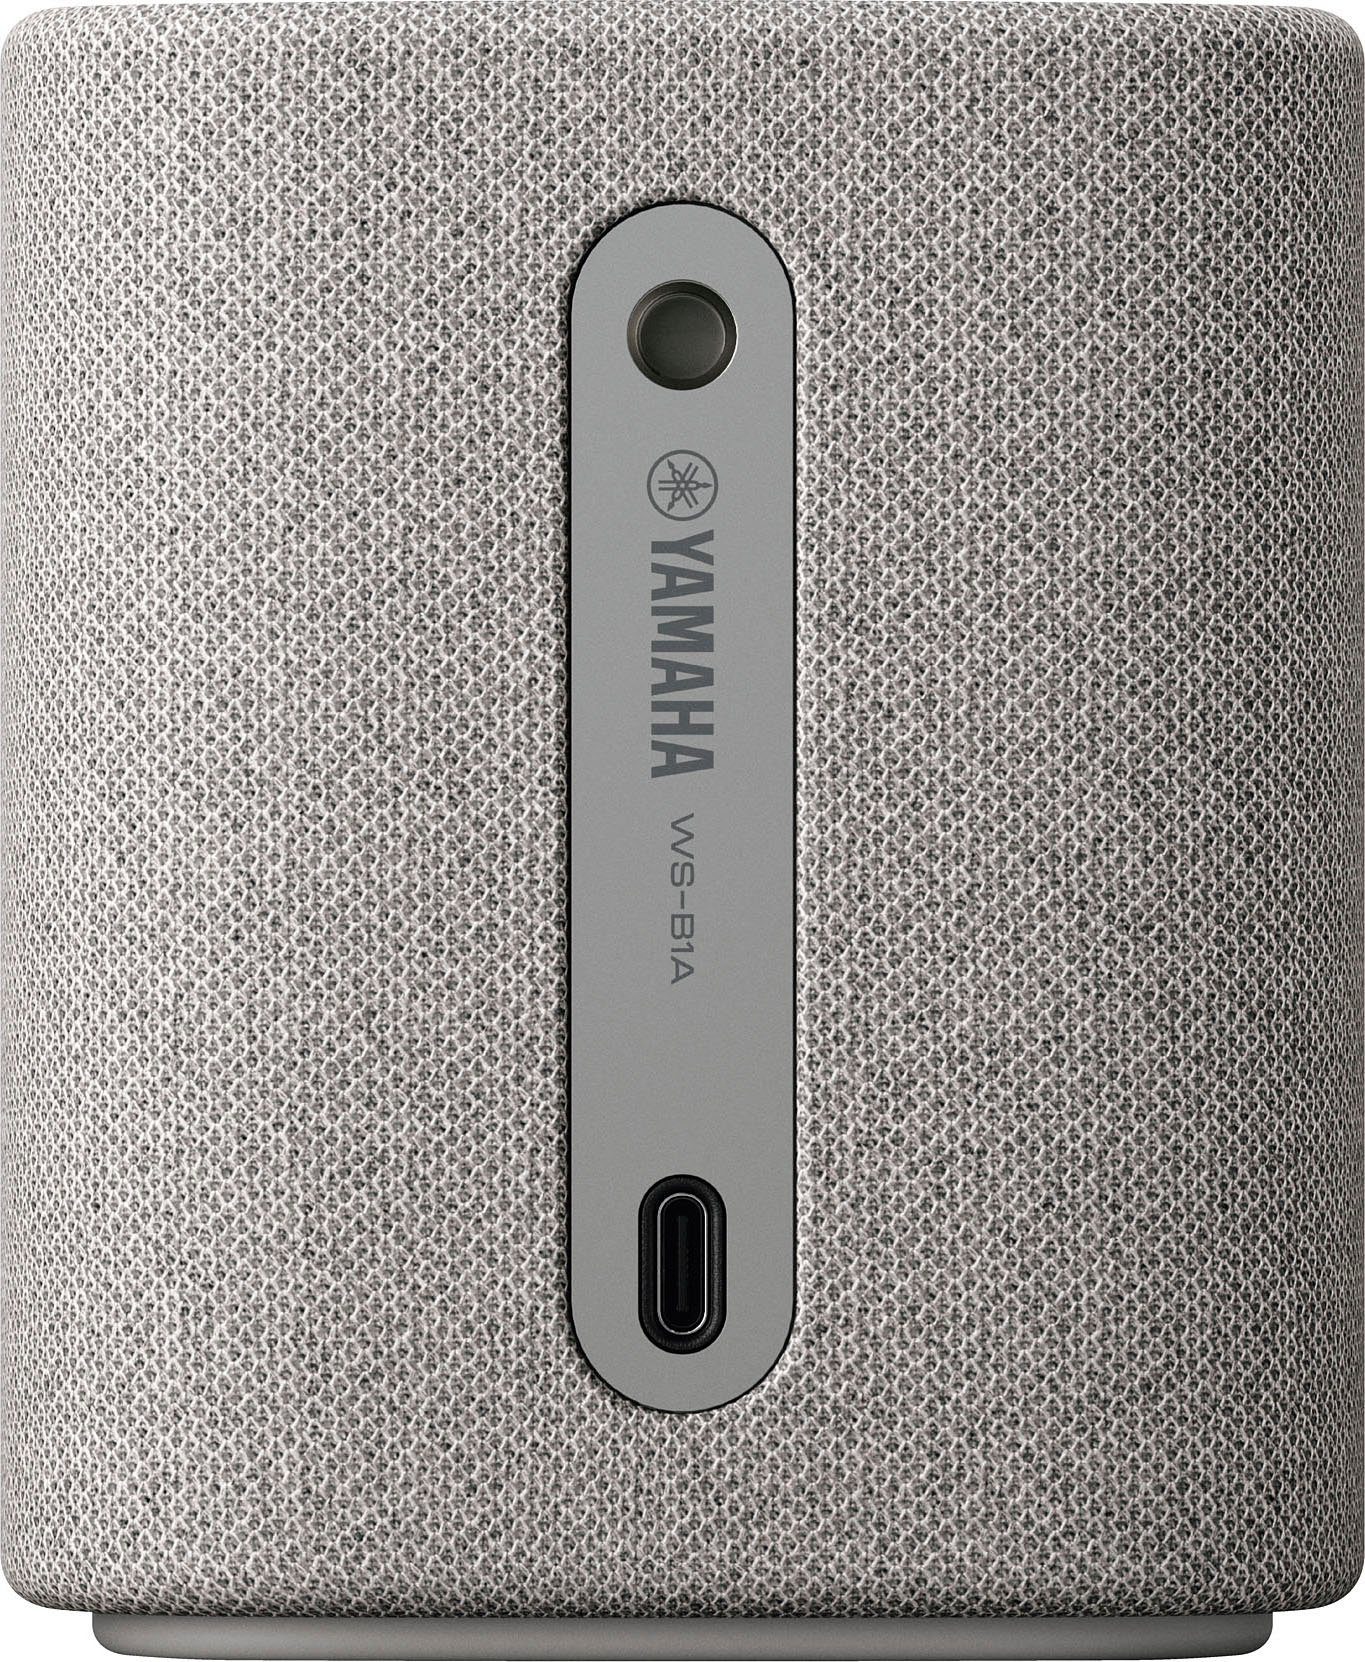 AVRCP Bluetooth, Portable-Lautsprecher Bluetooth, W) 10 WS-B1A Yamaha (A2DP